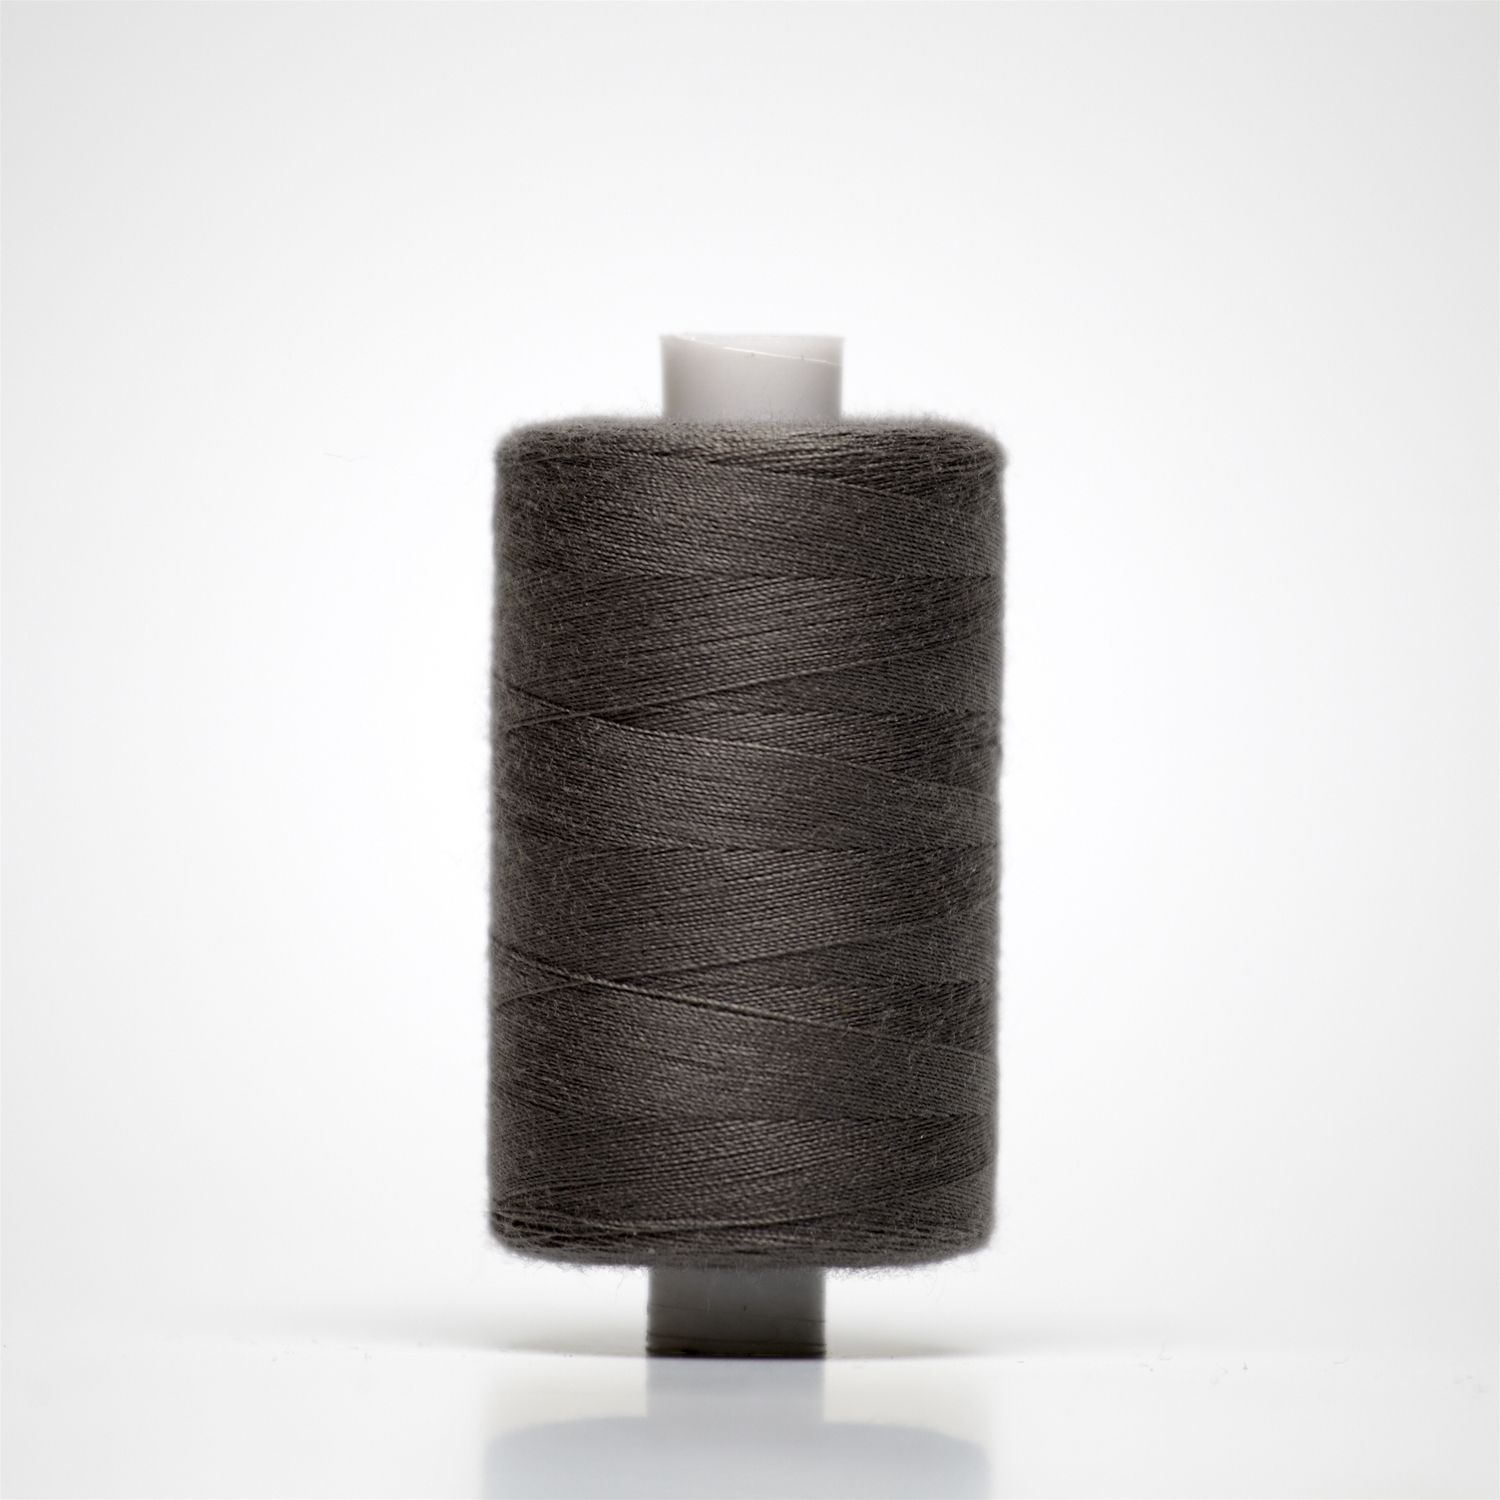 34066 | 1000y Budget Sewing Thread